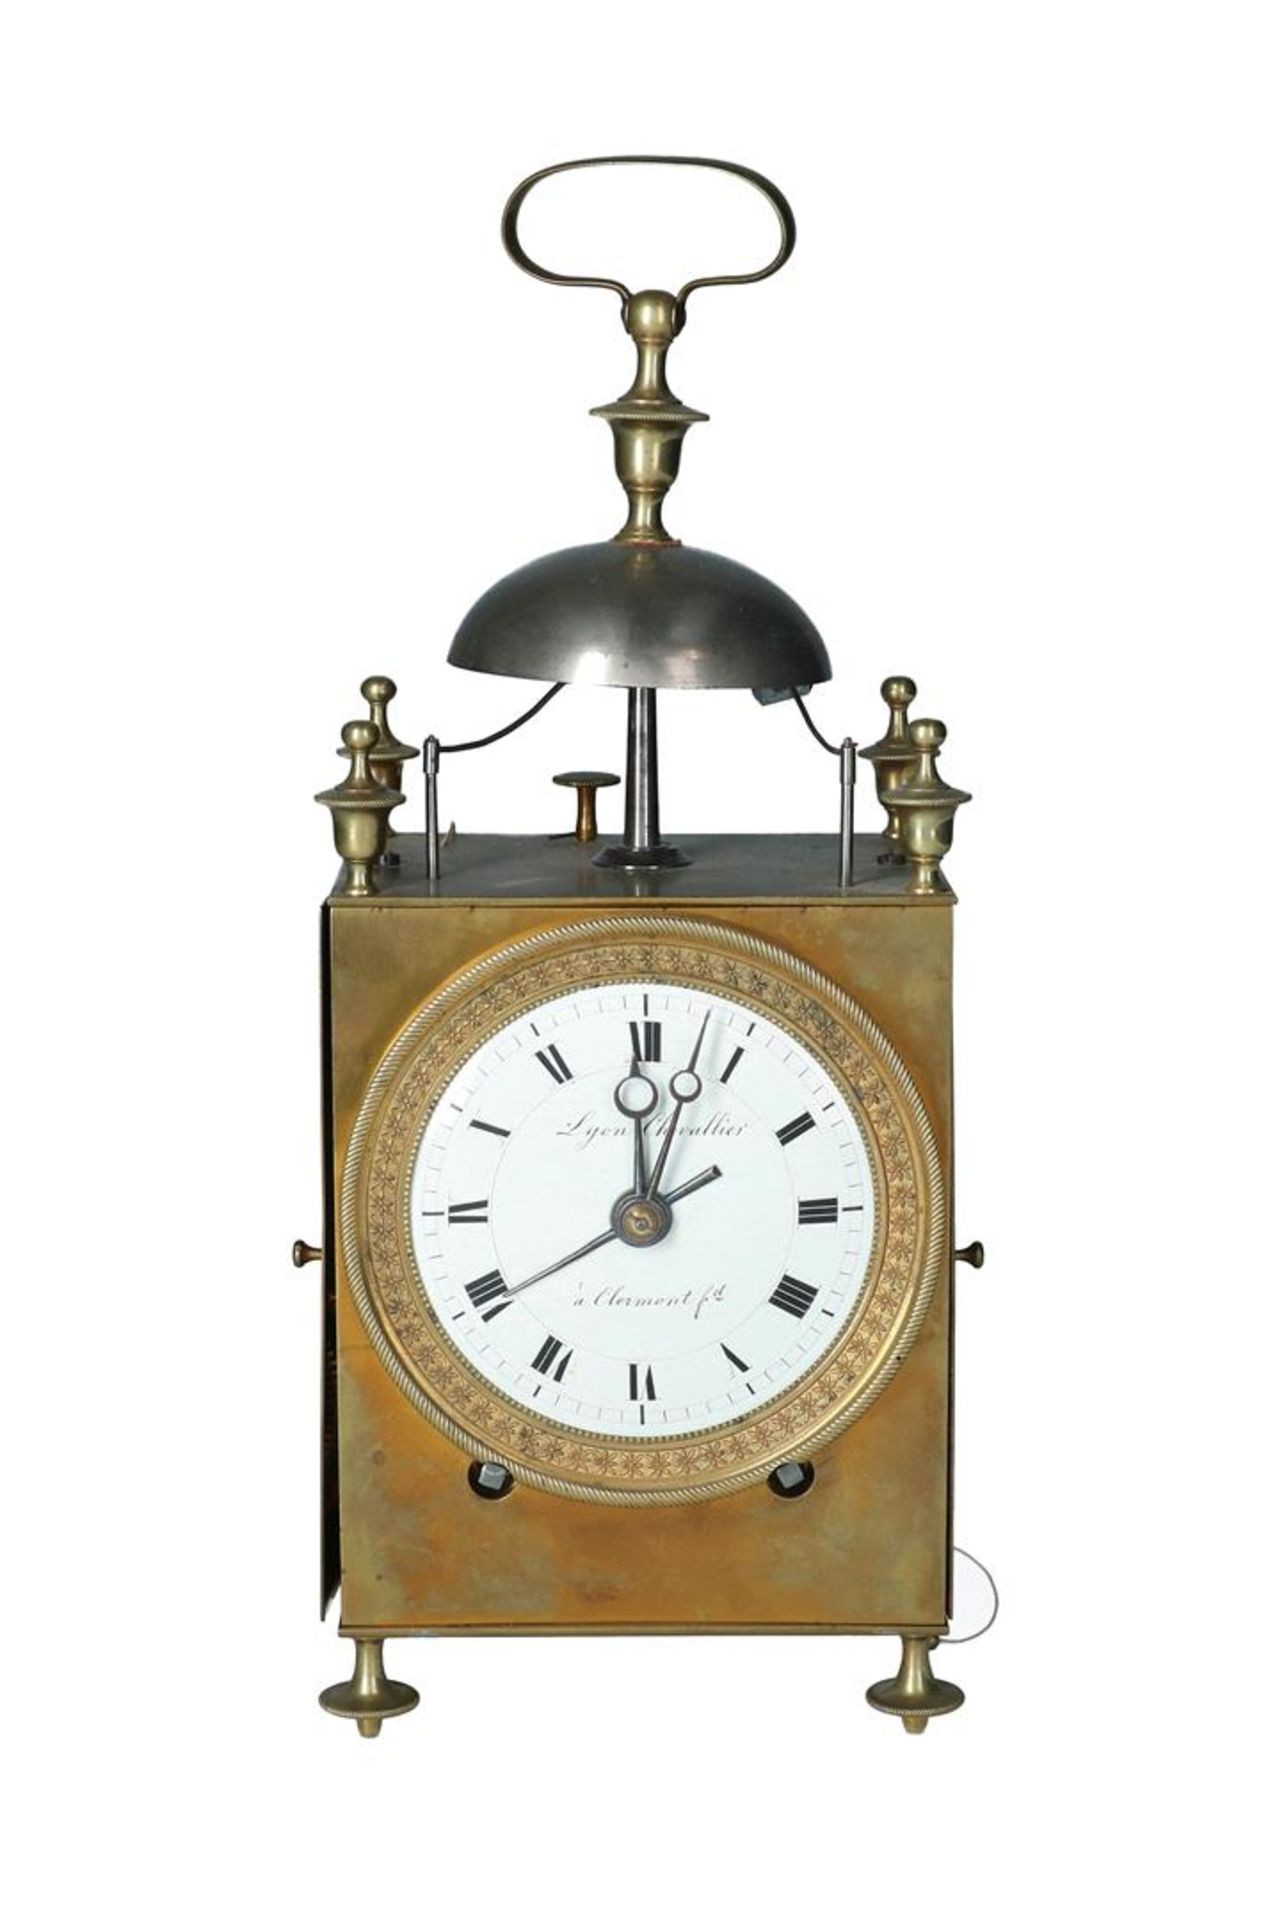 Capucine travel clock, Lyon Chevallier à Clermont ferrand. Around 1820.